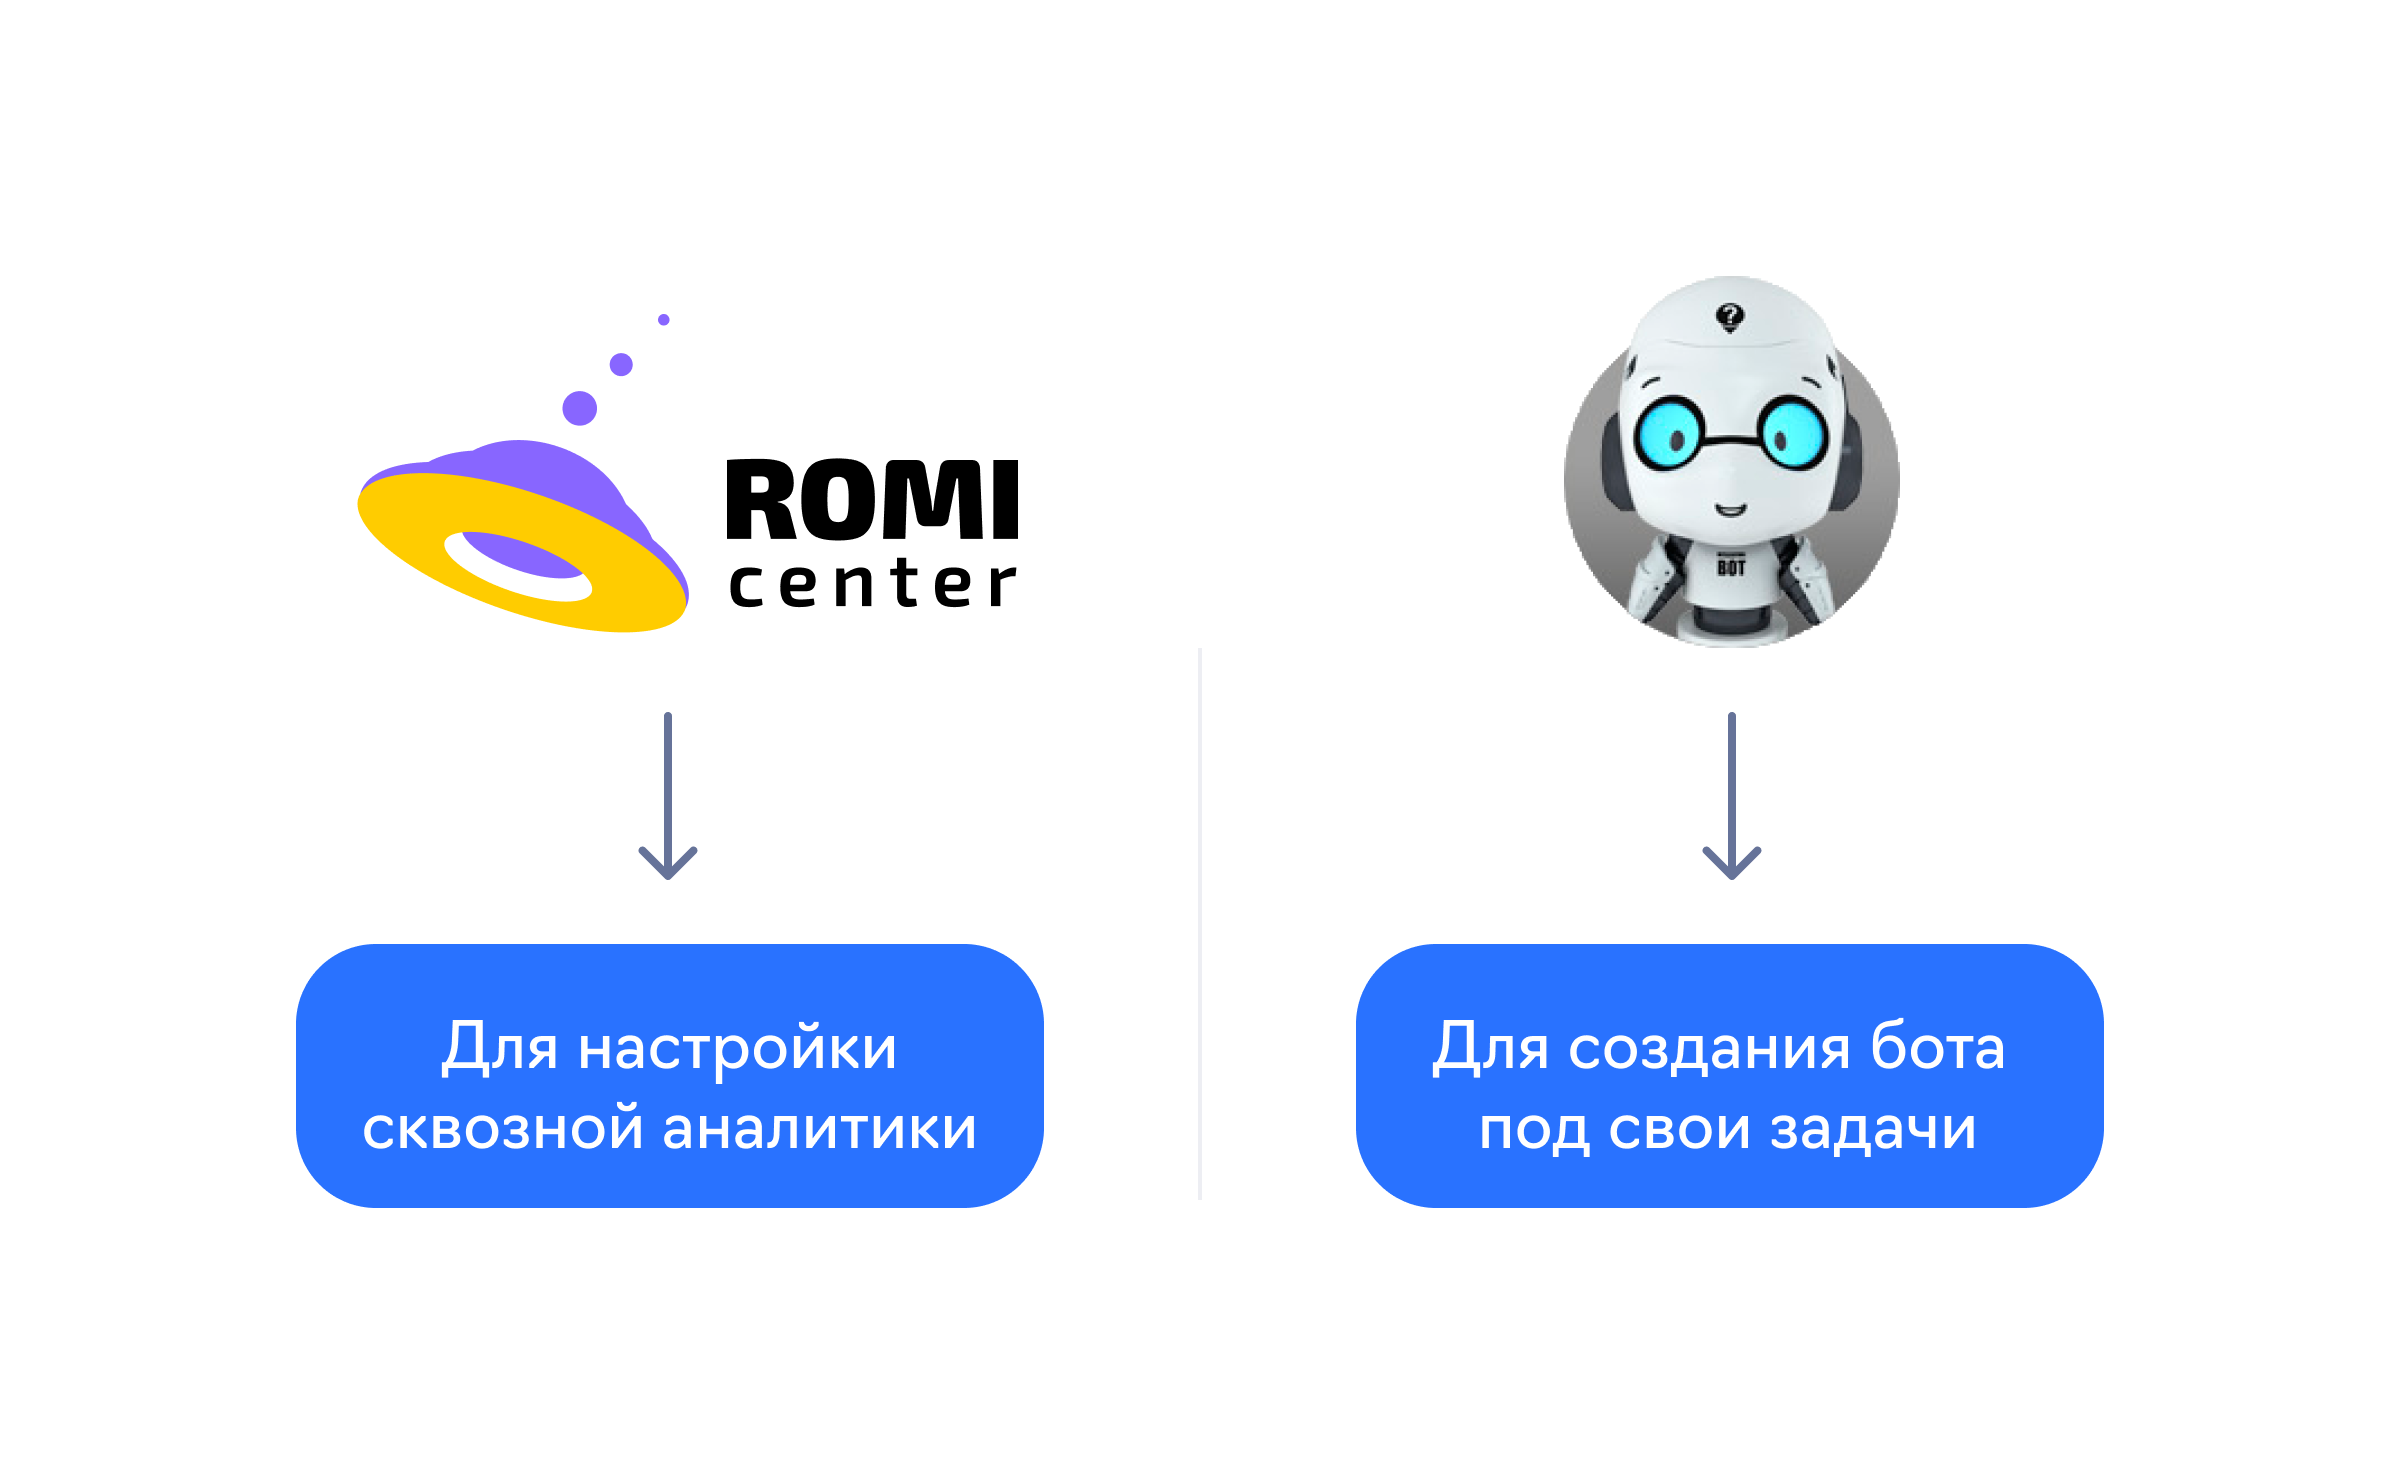 Новые инструменты на маркетплейсе eLama — ROMI Center и BorisBot